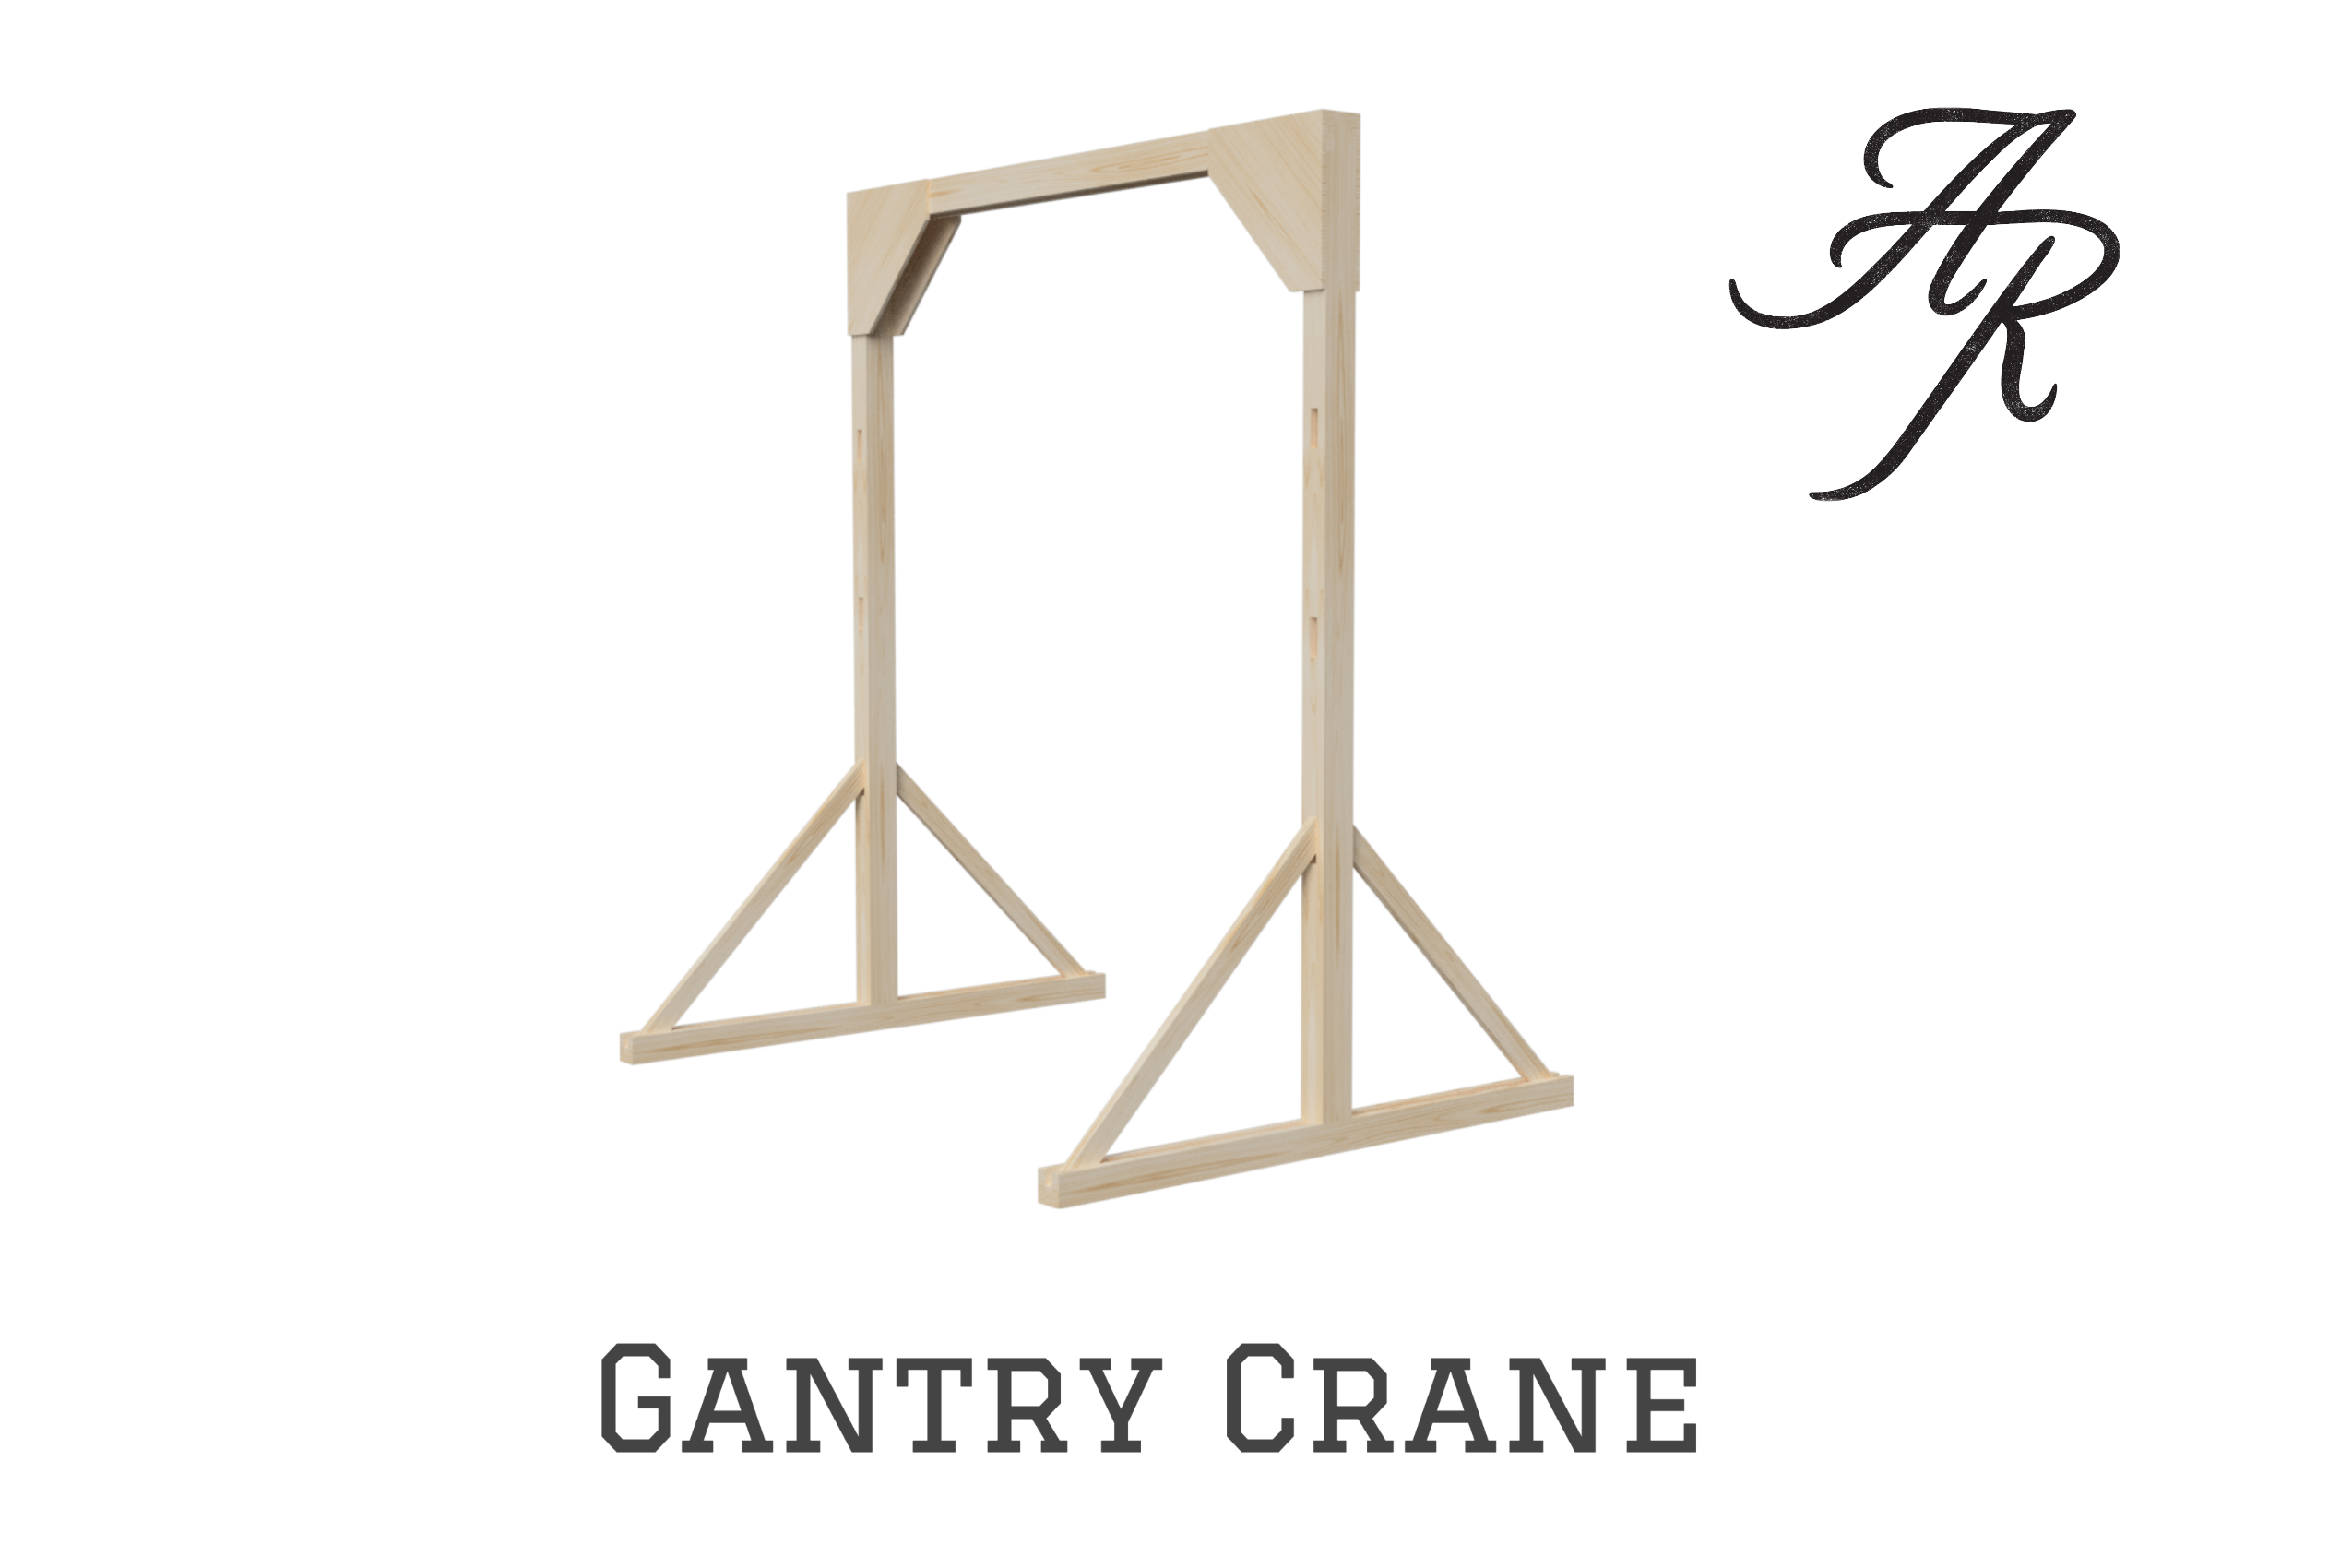 homemade gantry crane plans